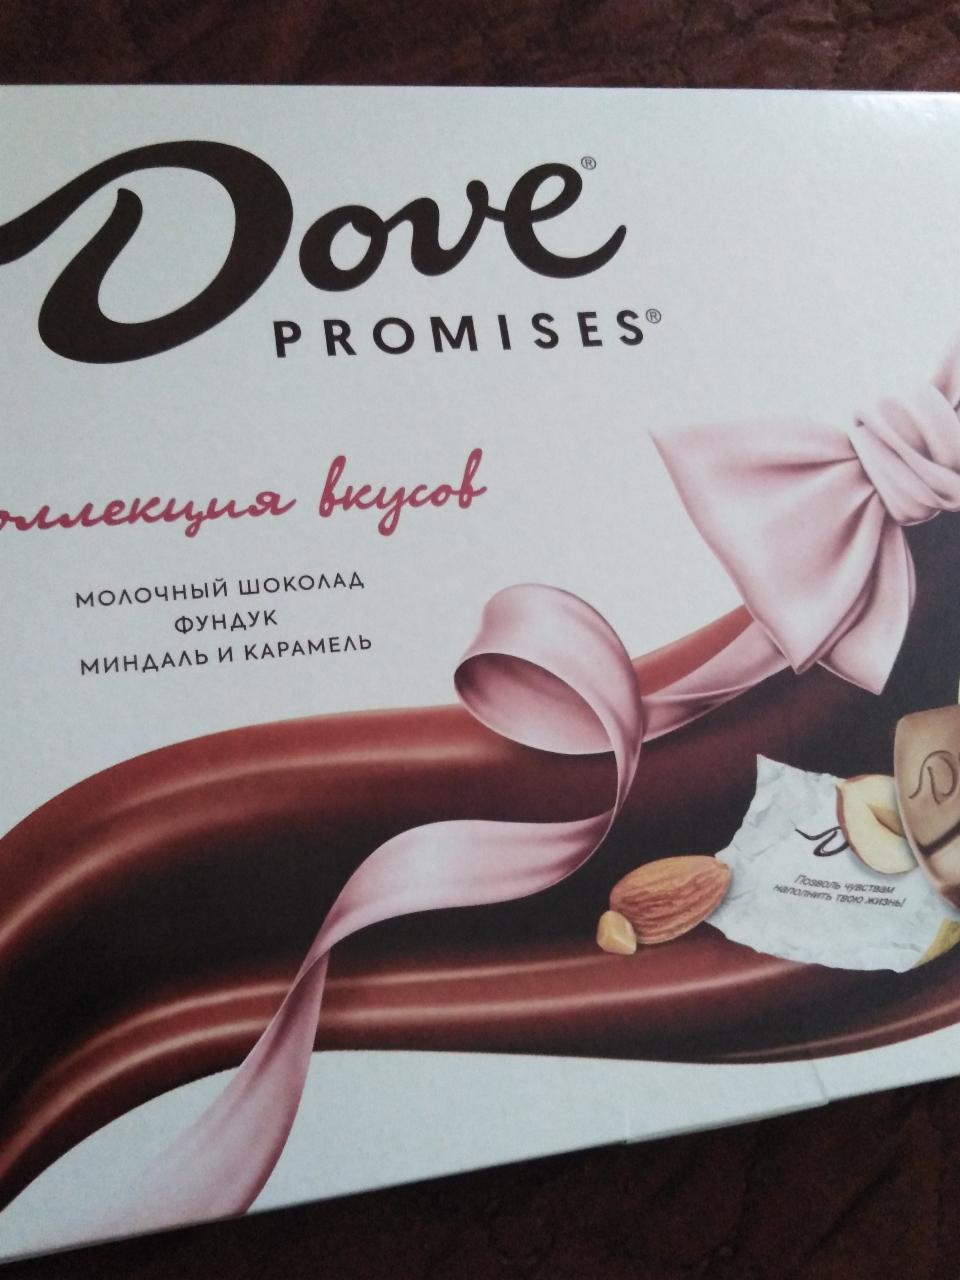 Фото - Коллекция молочного шоколада 'Dove promises': молочный шоколад, фундук, миндаль и карамель